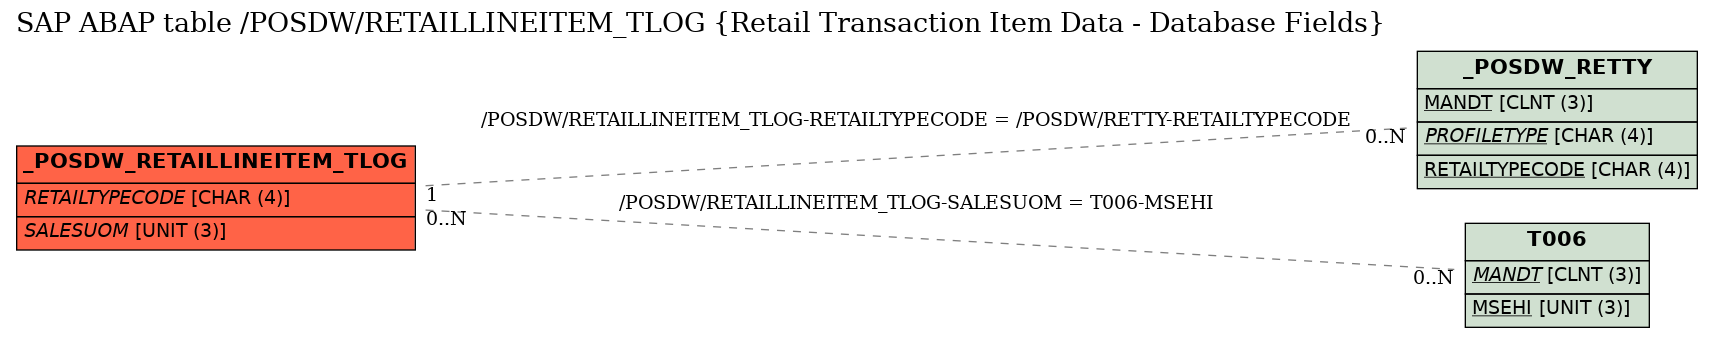 E-R Diagram for table /POSDW/RETAILLINEITEM_TLOG (Retail Transaction Item Data - Database Fields)